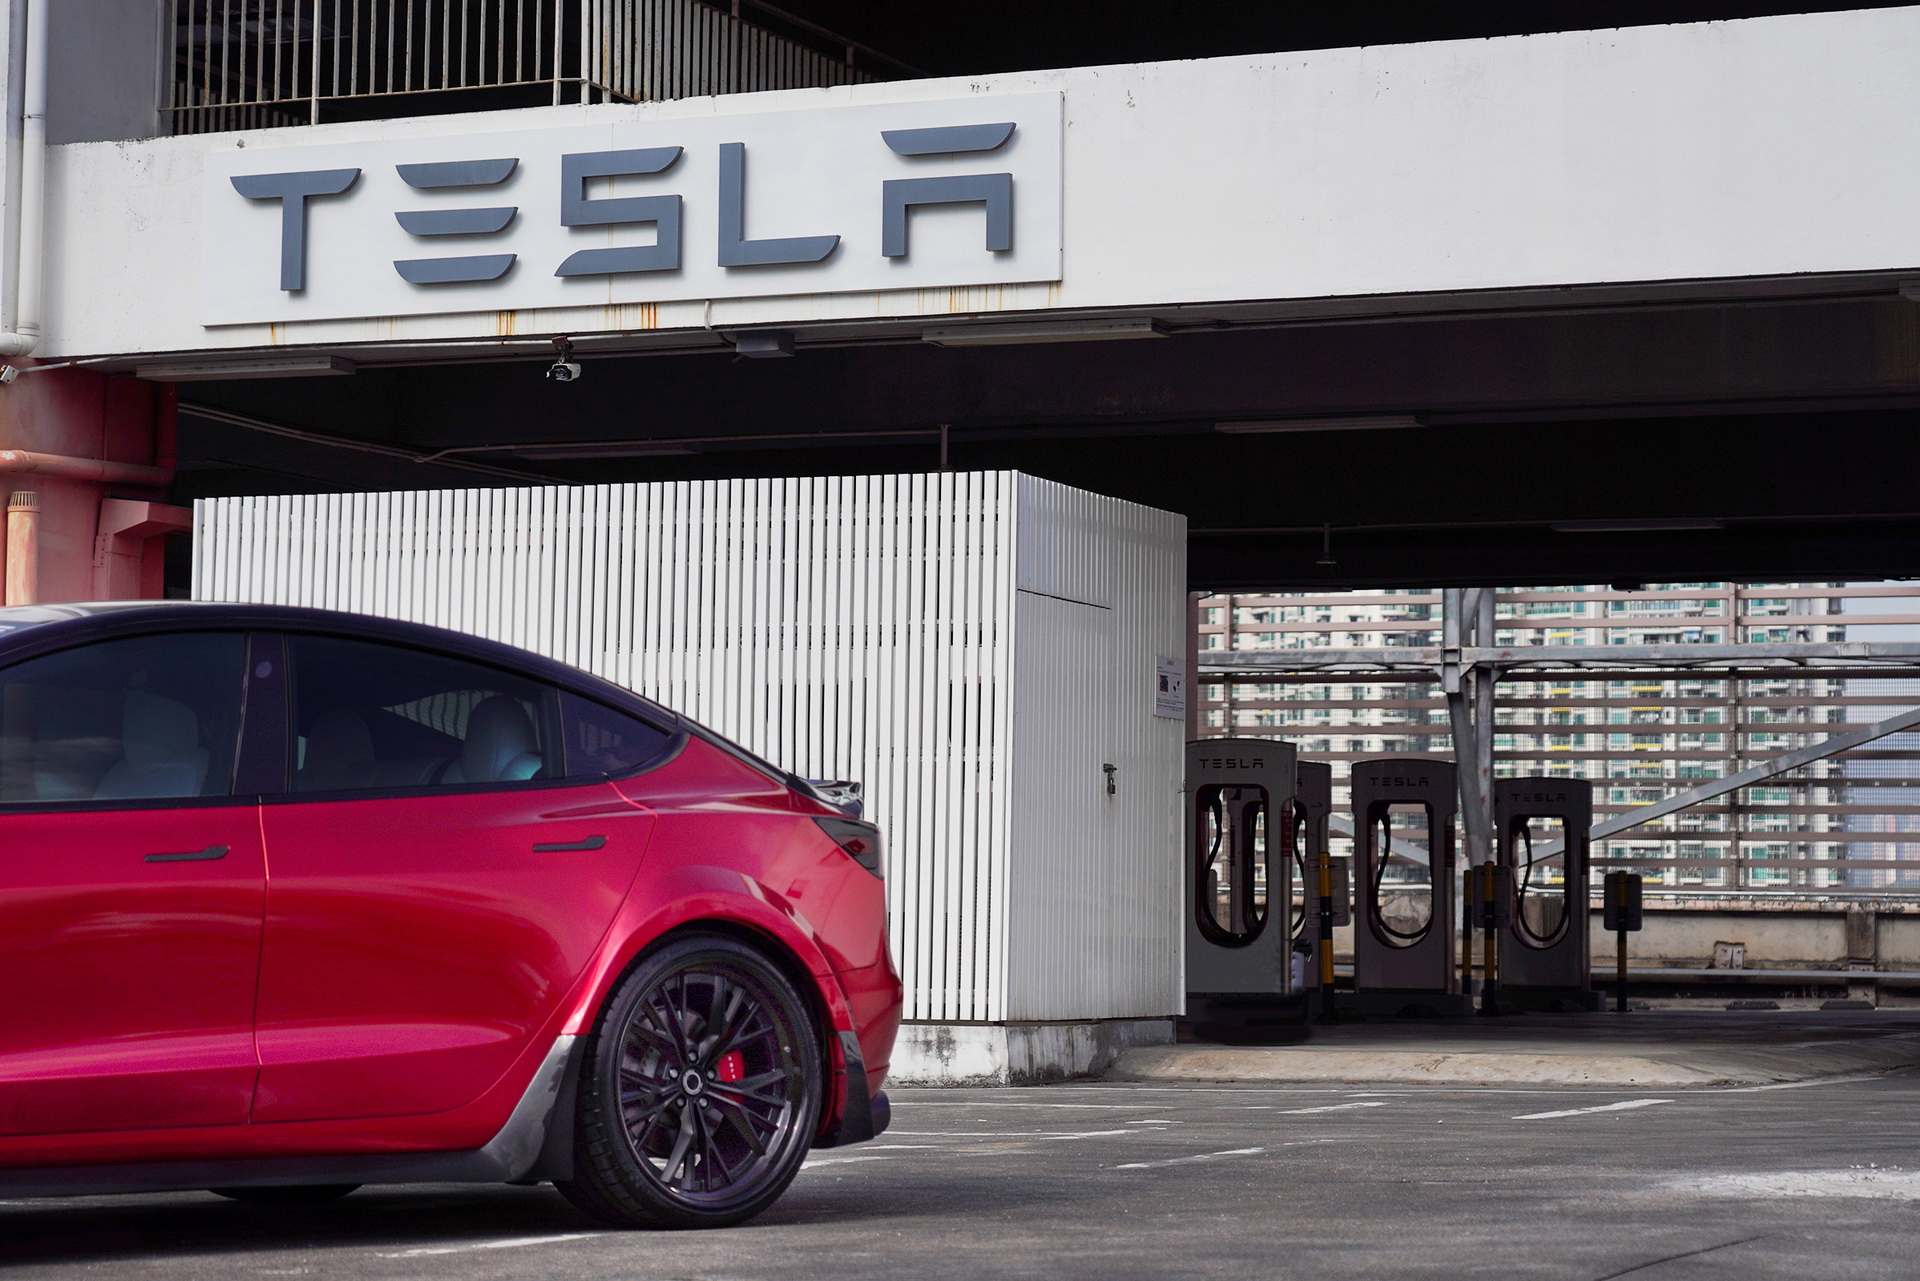 ซิ่งเปลี่ยนลุค! Tesla Model 3 Performance แต่งหล่อรอบคันโดยสำนัก RevoZport